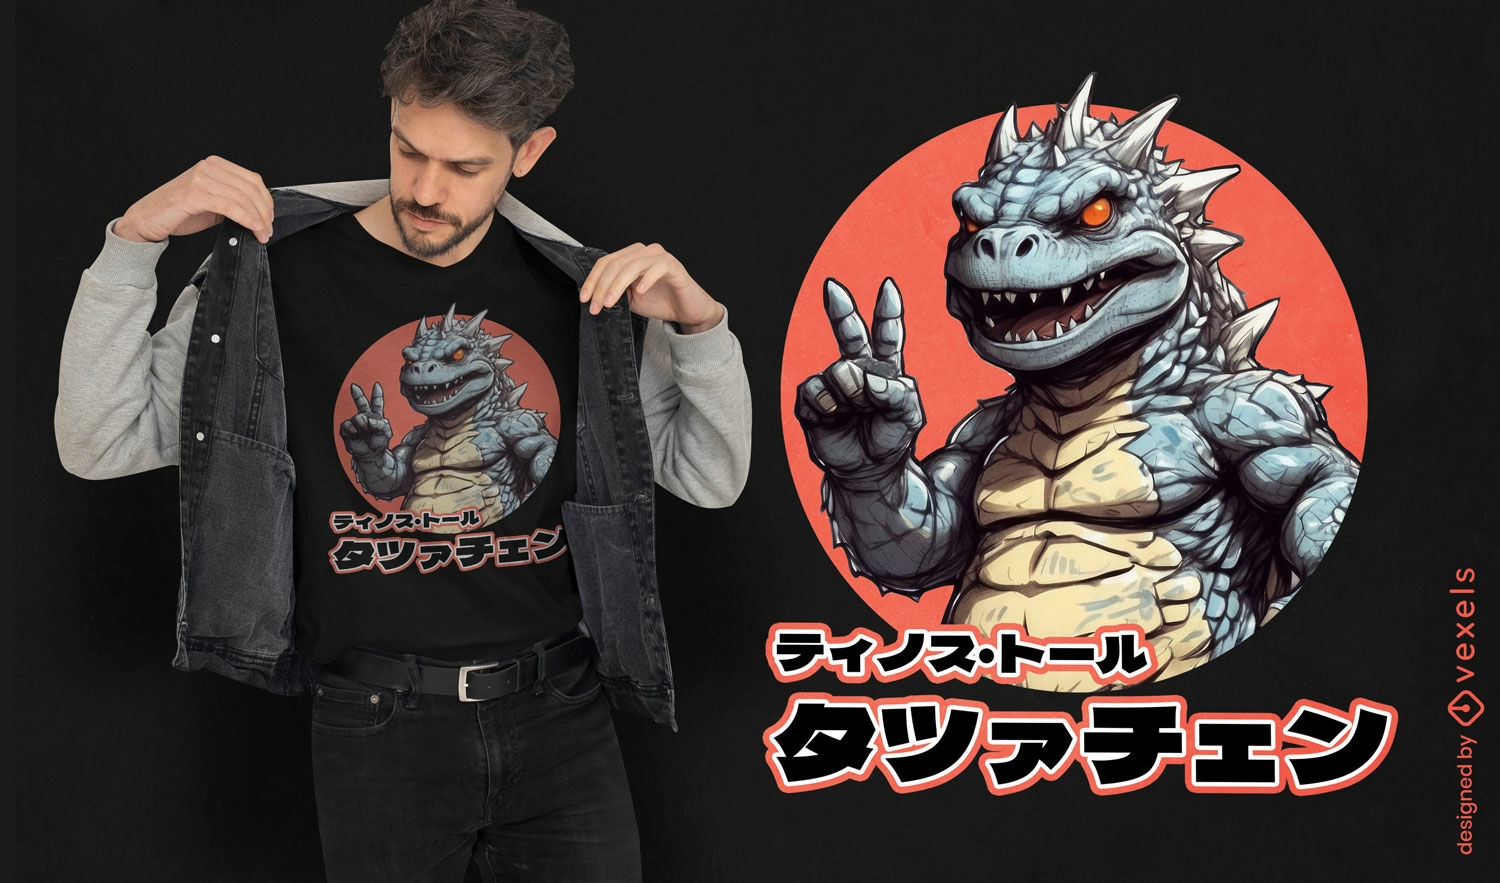 Diseño de camiseta de dibujos animados japoneses de Godzilla.